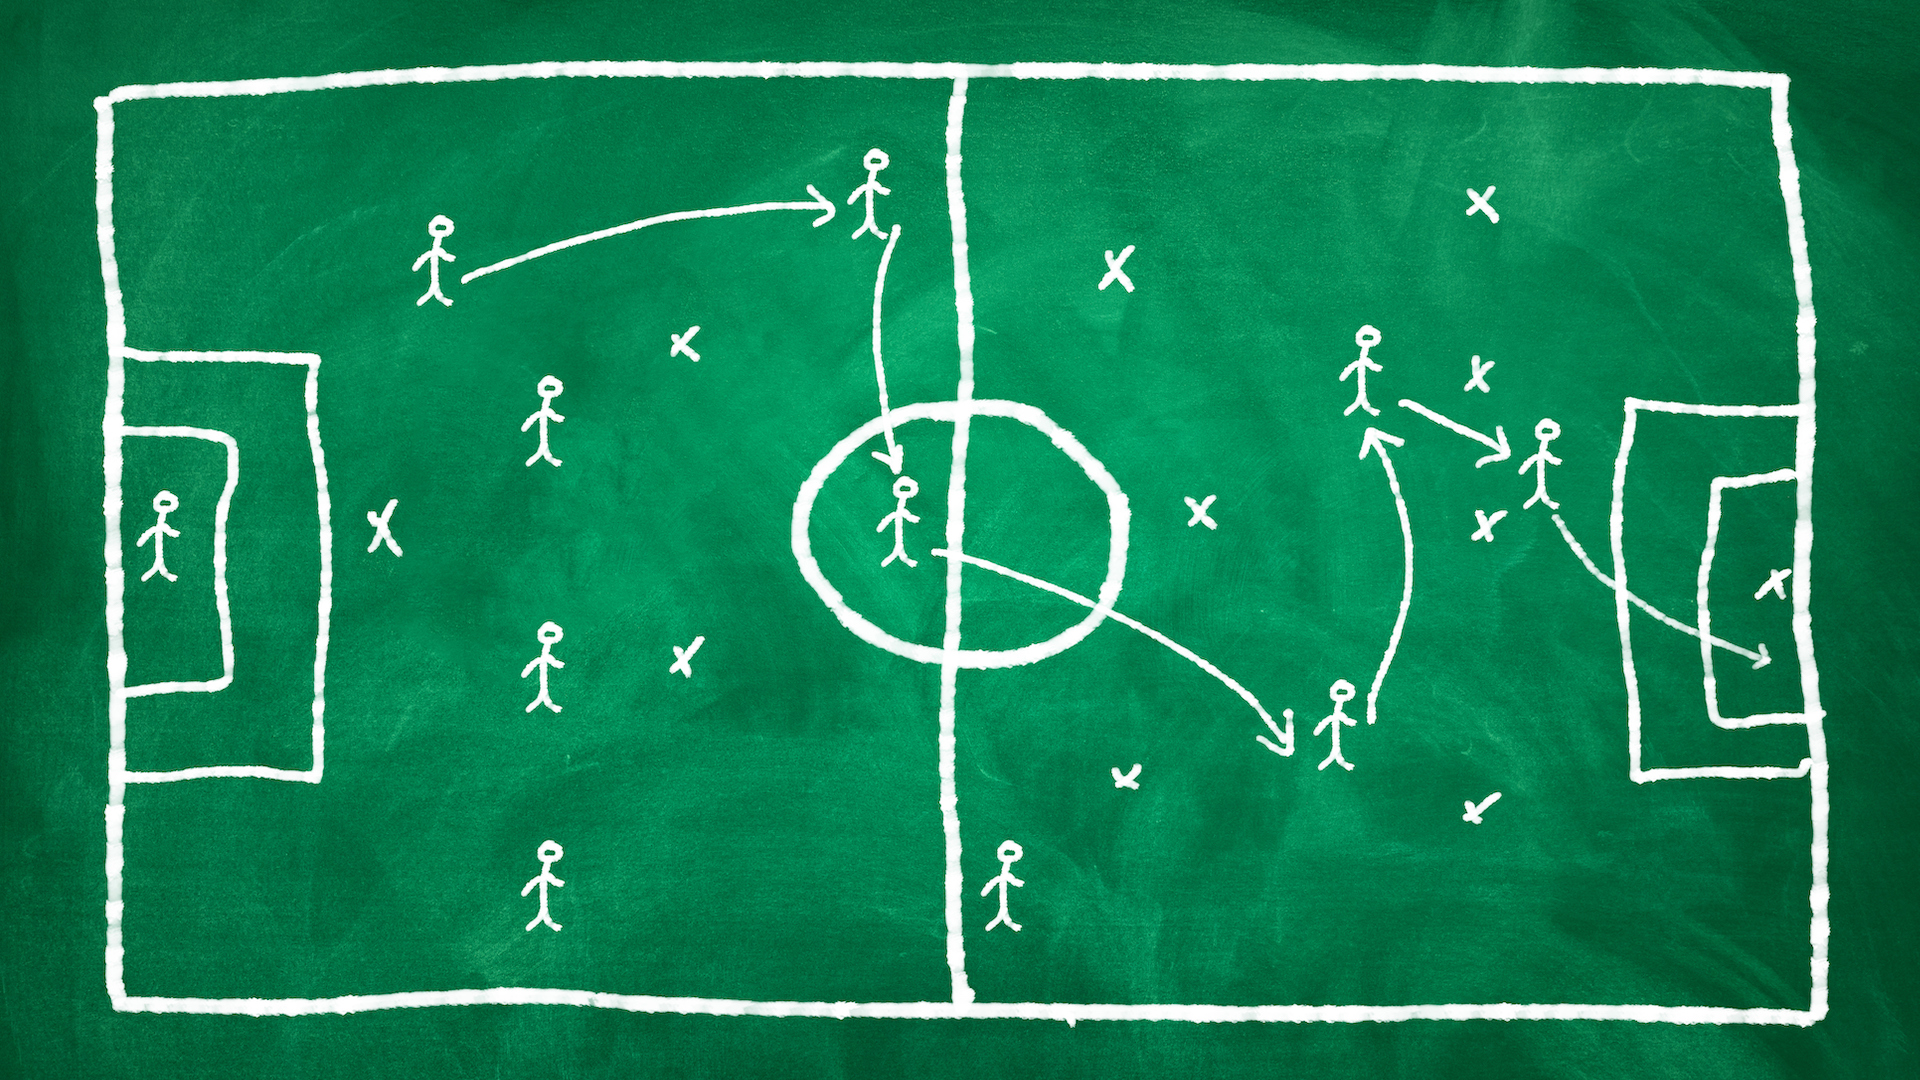 Football tactics on a green chalkboard 